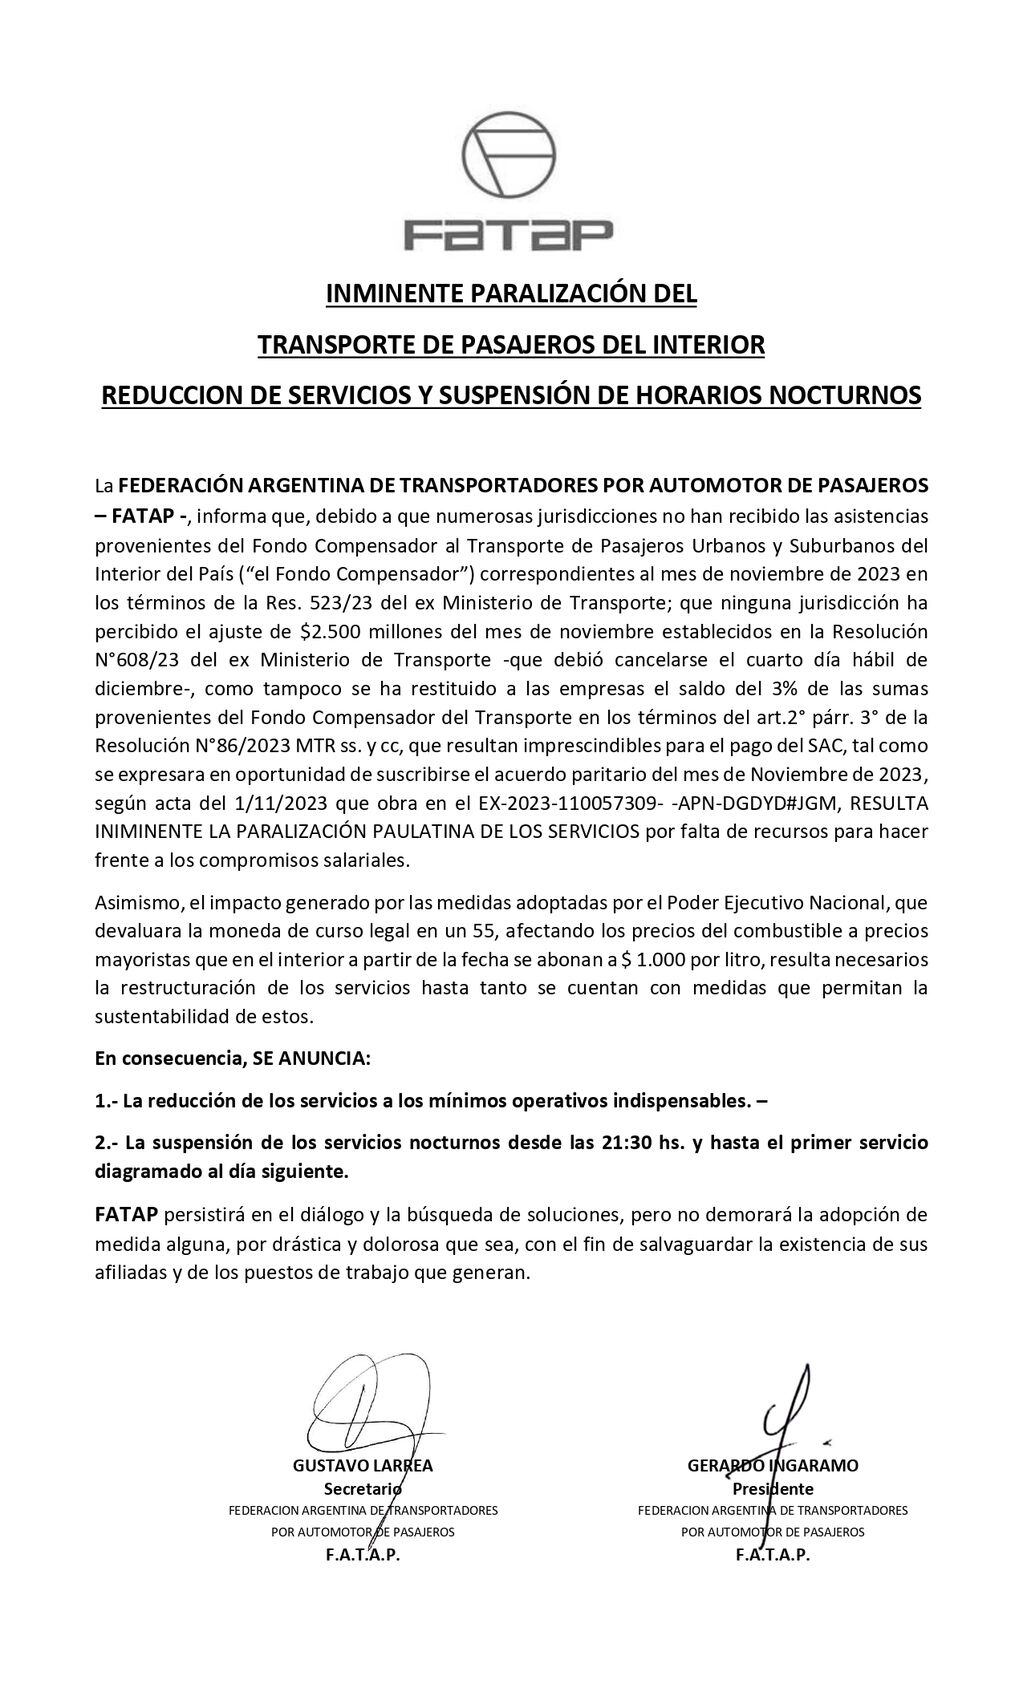 Comunicado de la Federación Argentina de Transportadores por Automotor de Pasajeros.